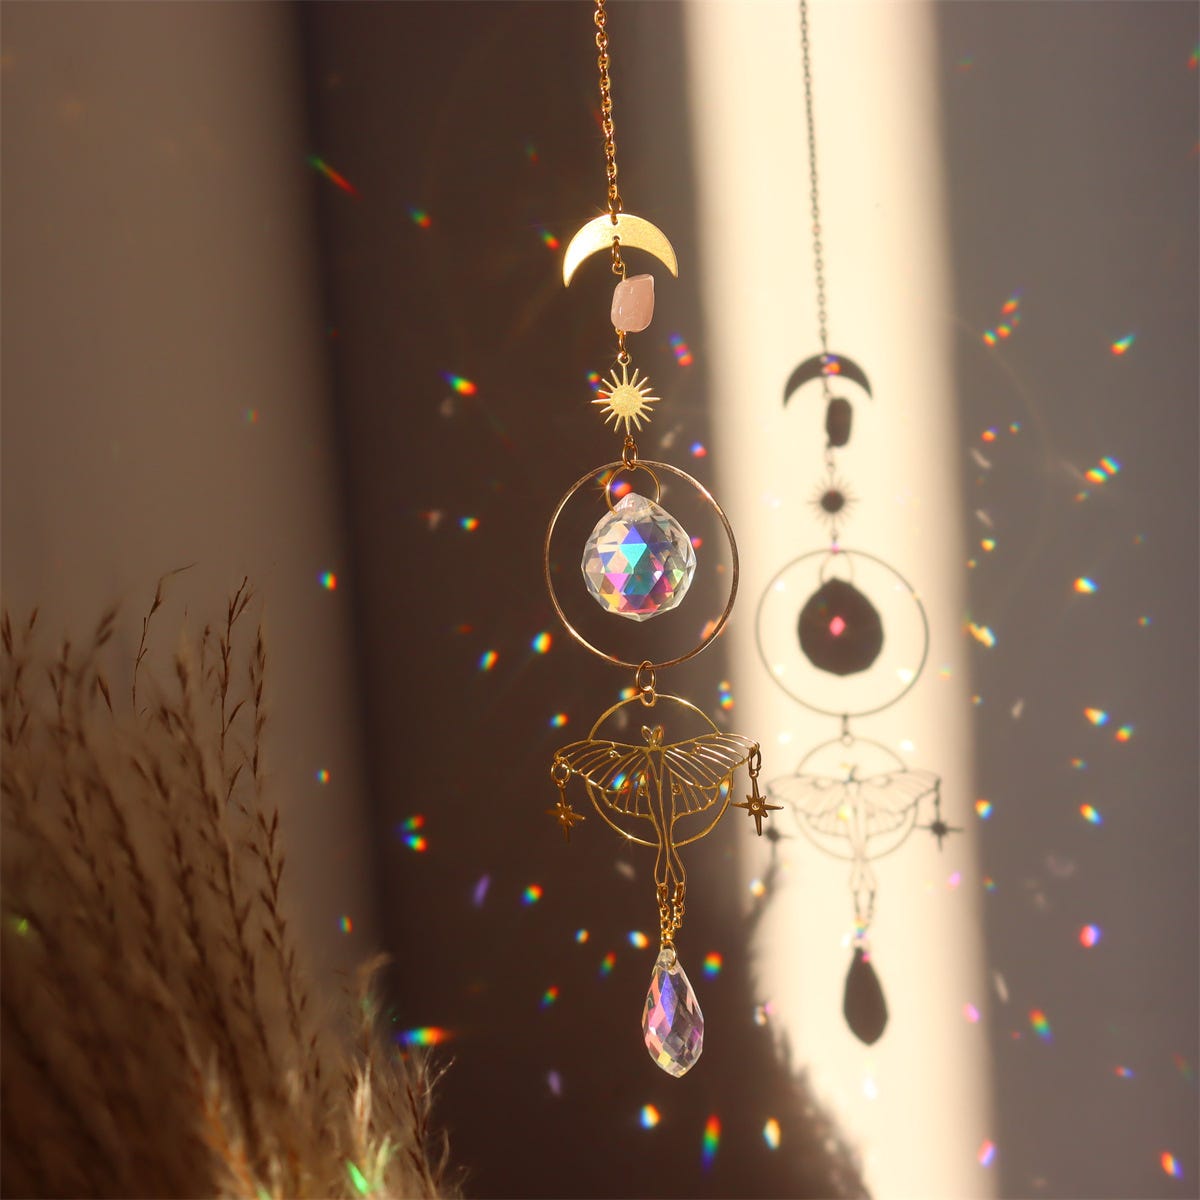 Attrape-soleil suspendu en cristal, boule de prisme, or, lune